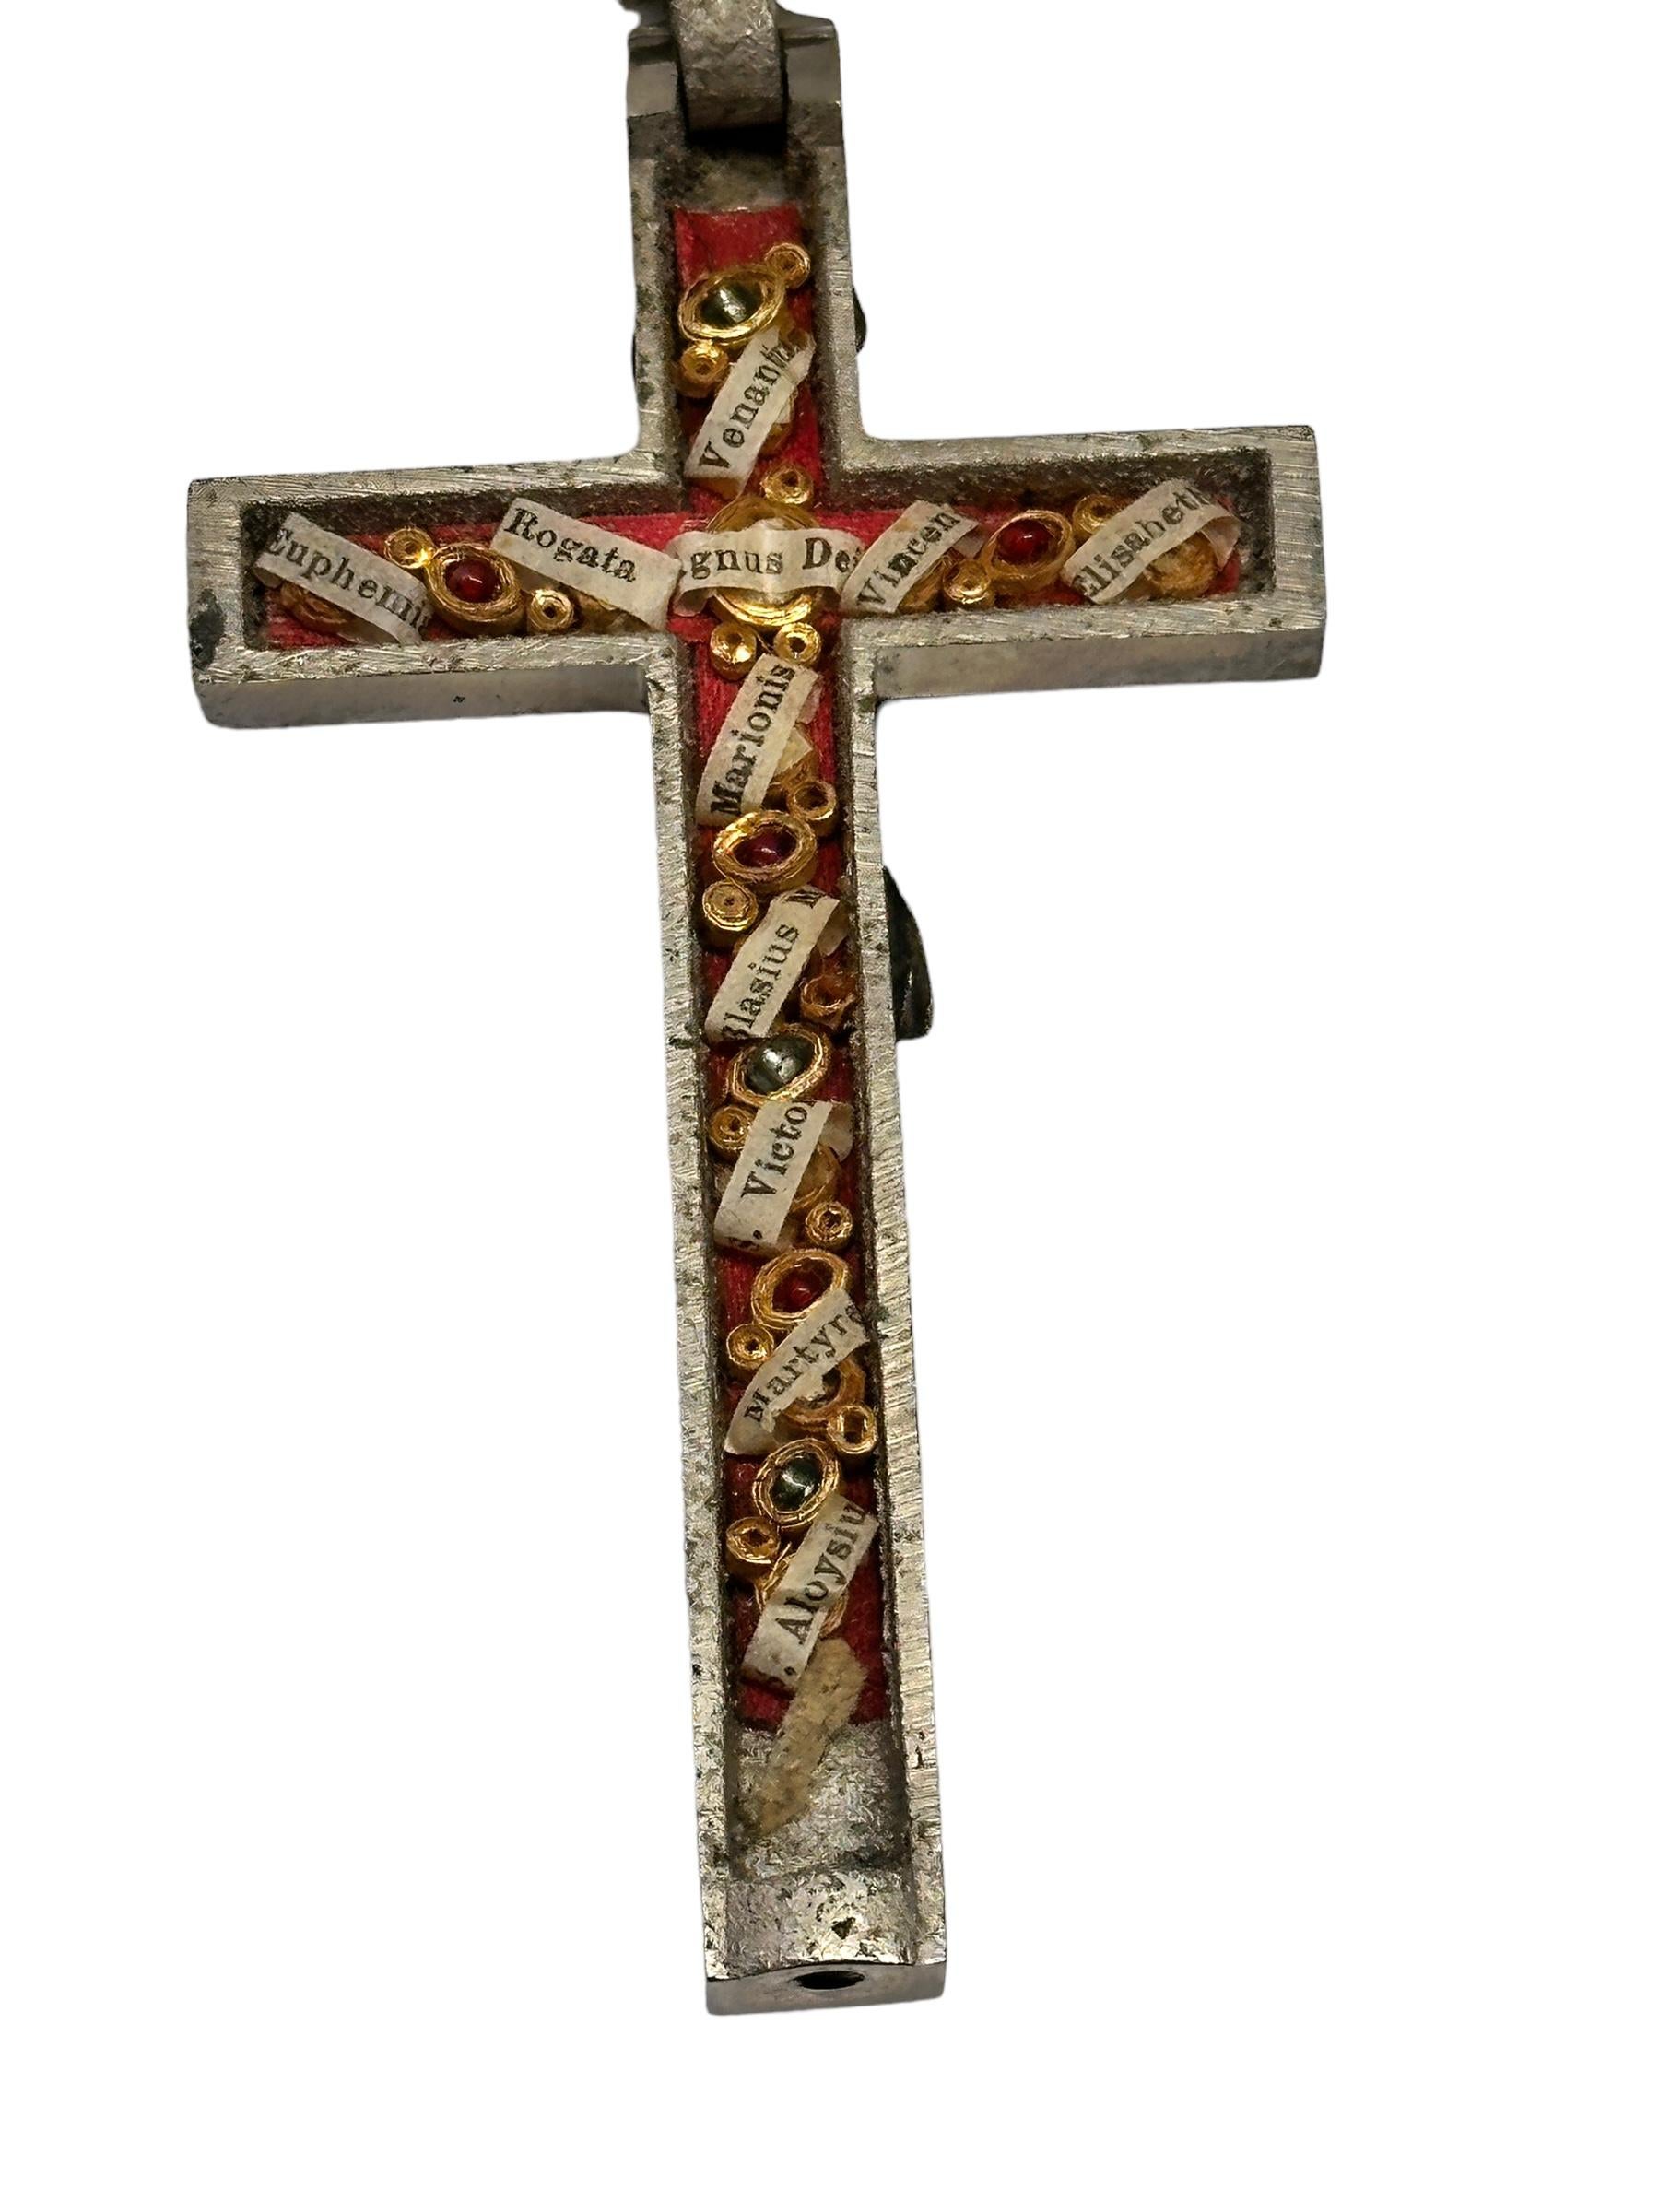 Metal Large Antique Catholic Reliquary Box Crucifix Pendant Eleven Relics of Saints For Sale